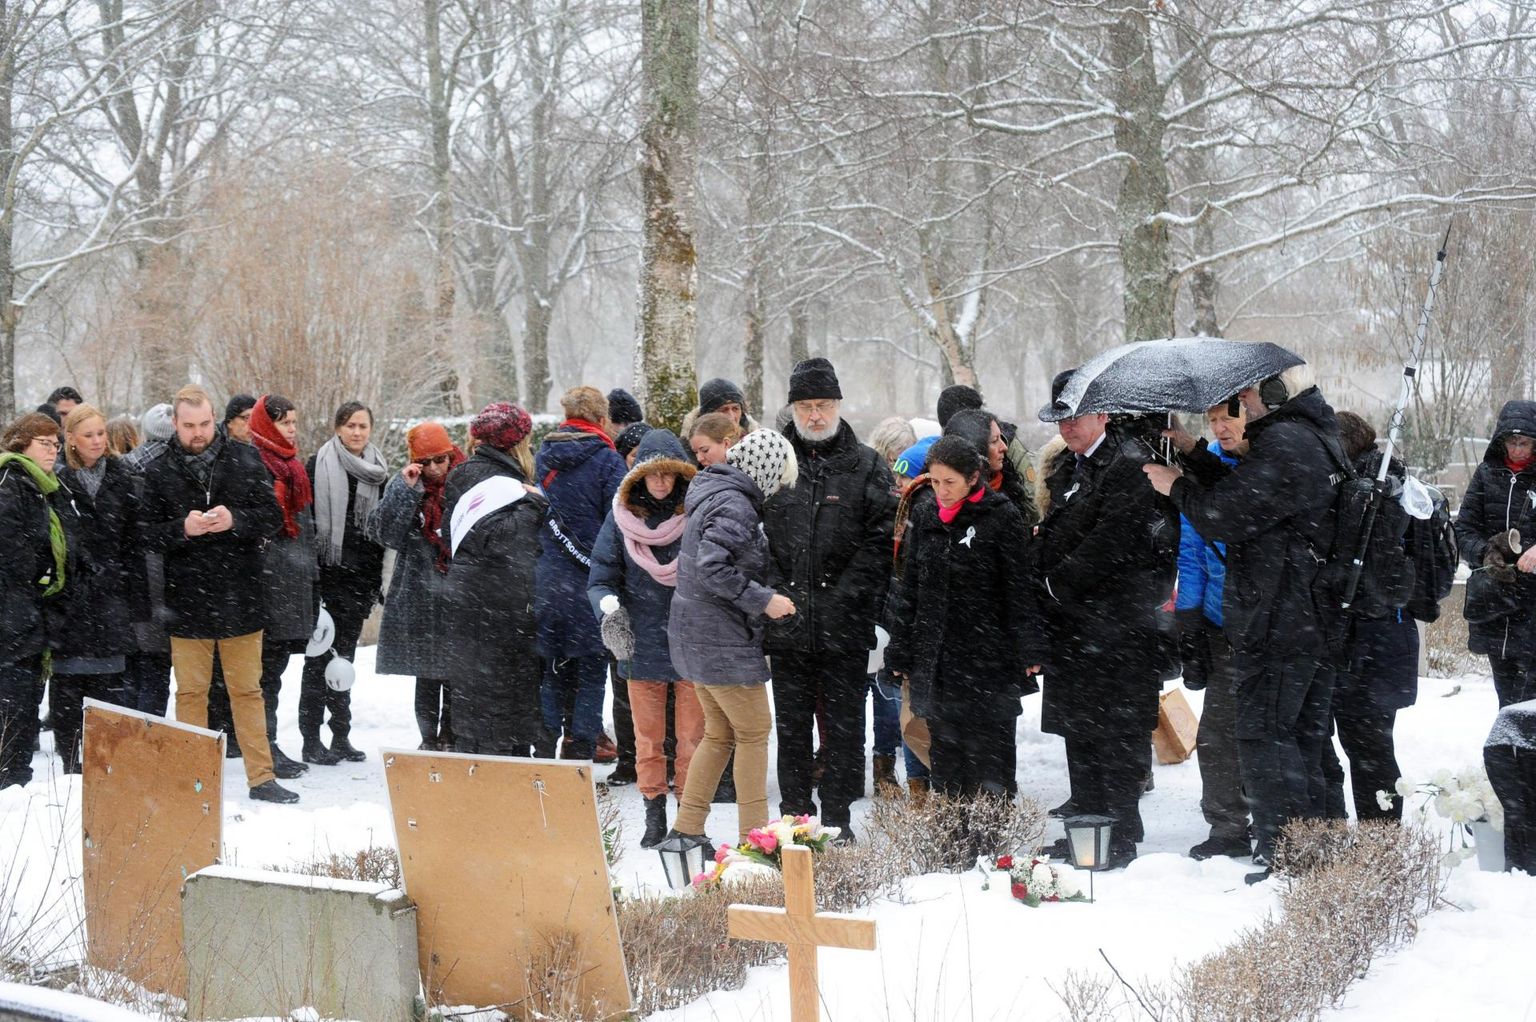 Iga aasta 21. jaanuaril koguneb rahvas GAPFi eestvõtmisel Uppsalasse Fadime Şahindali hauale, et meenutada just sel päeval 2002. aastal oma isa käe läbi surnud noort naist, kellele pere pani pahaks iseseisvust ja soovi valida ise endale elukaaslane. Pildil mälestajad tema haual mõne aasta eest. 